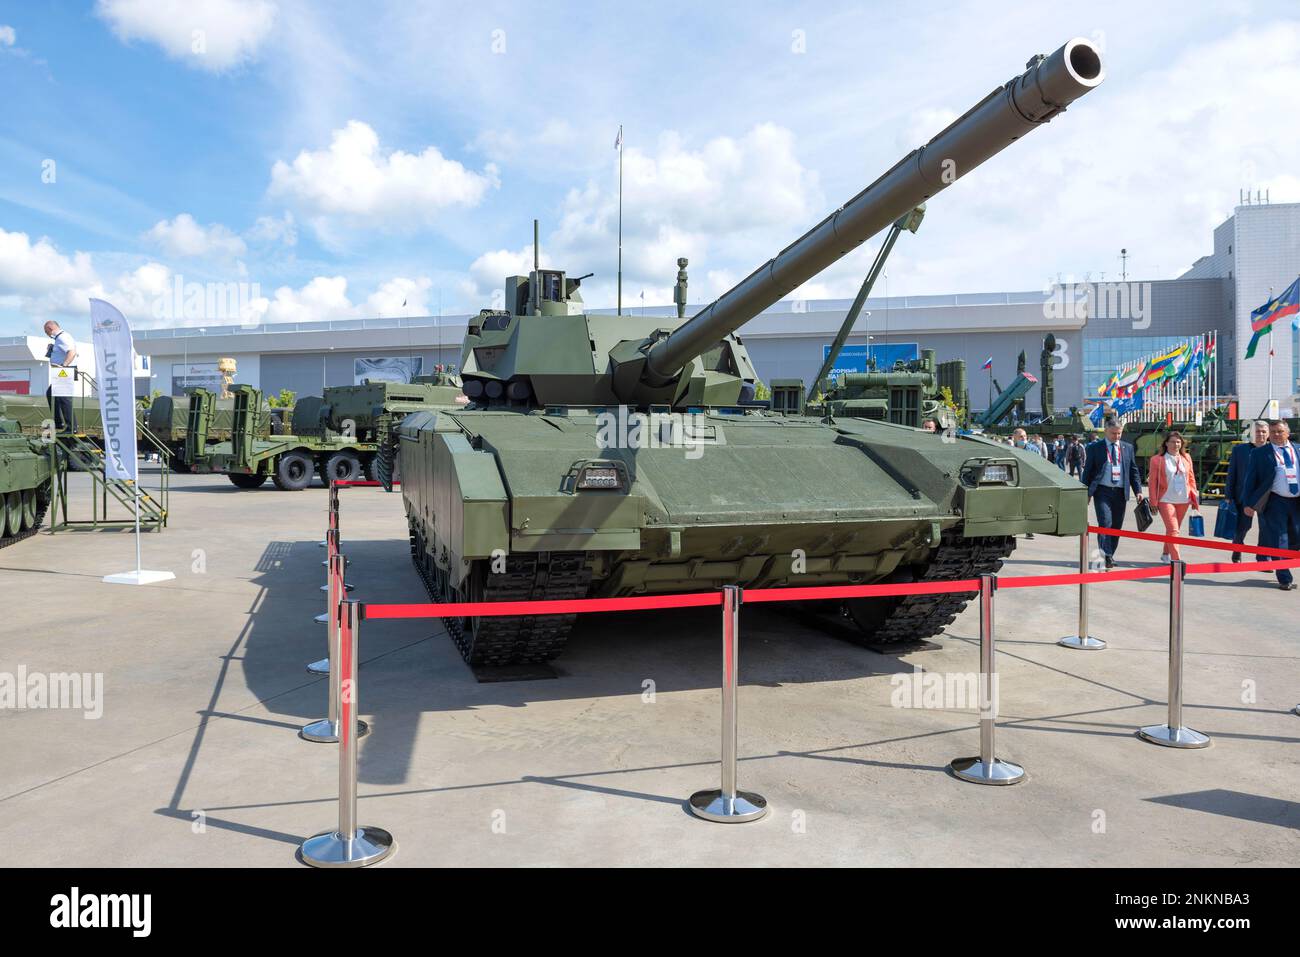 MOSKAU REGION, RUSSLAND - 25. AUGUST 2020: Neuester russischer Panzer der Armata T-14. Ausstellung des internationalen militärisch-technischen Forums "Army-2020". Stockfoto